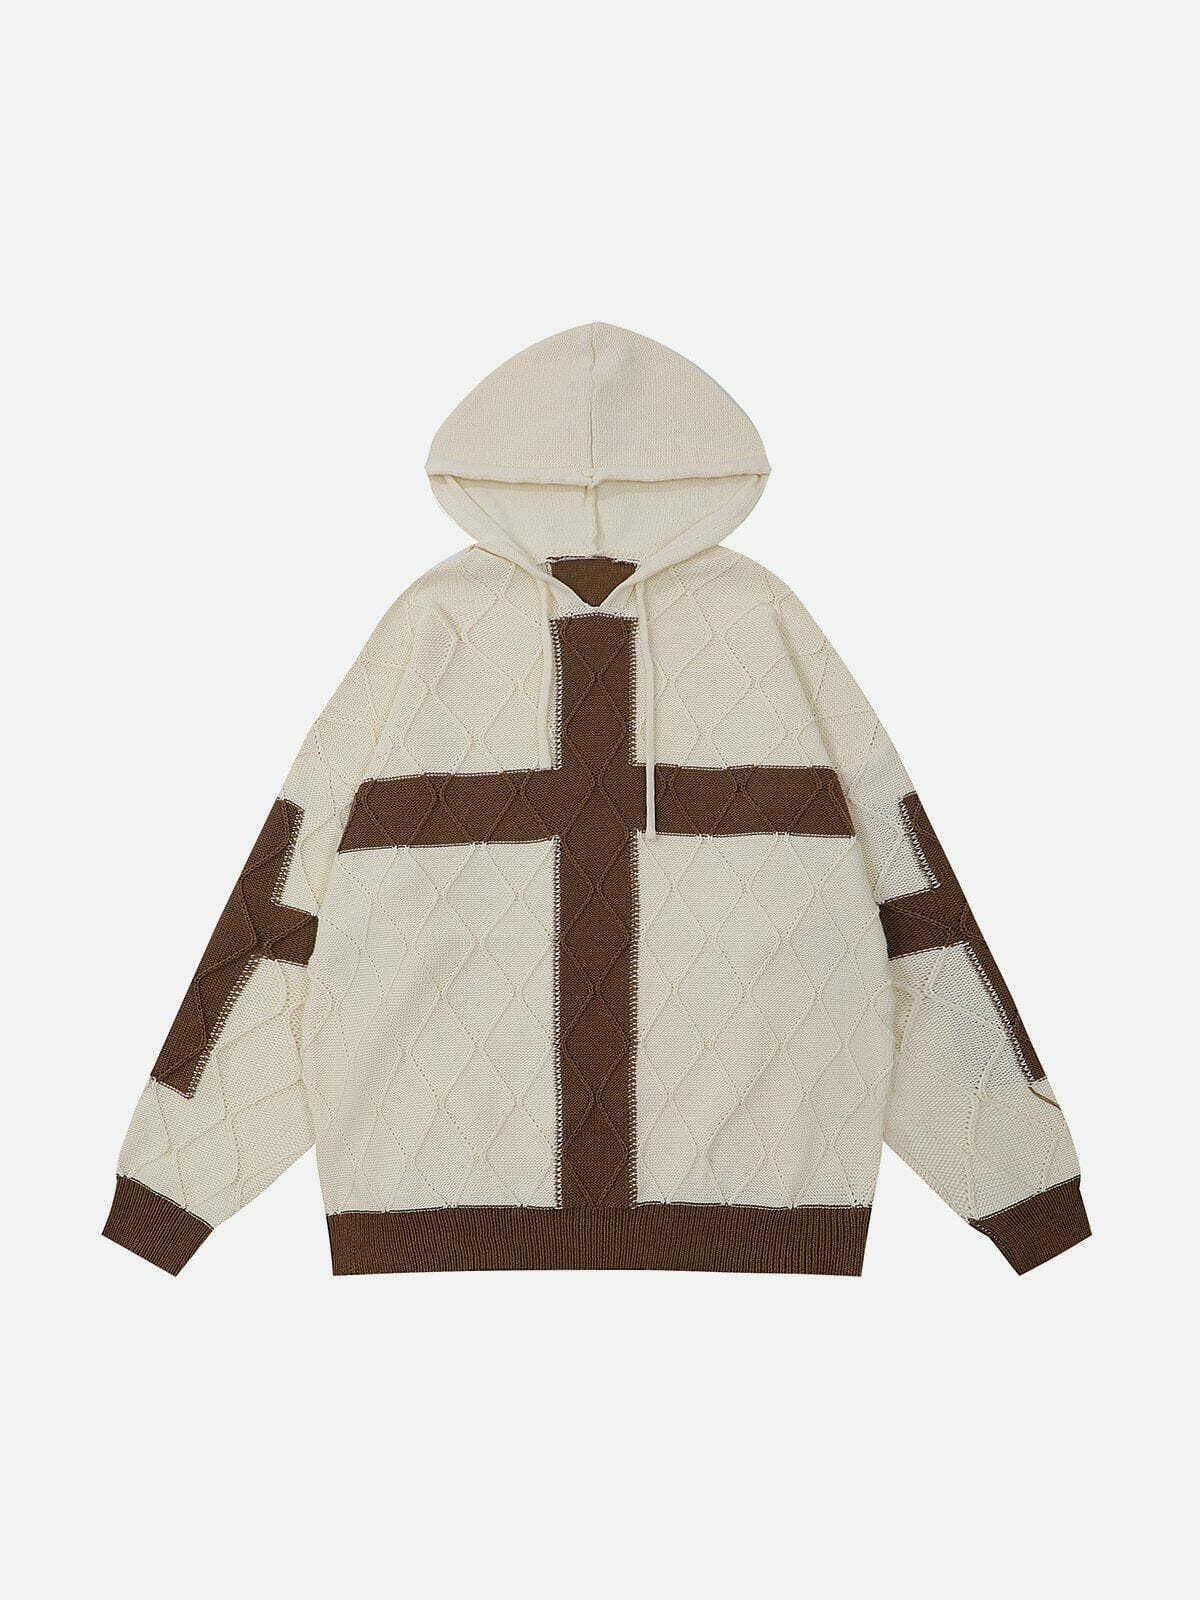 patchwork cross hoodie edgy & urban streetwear 4961